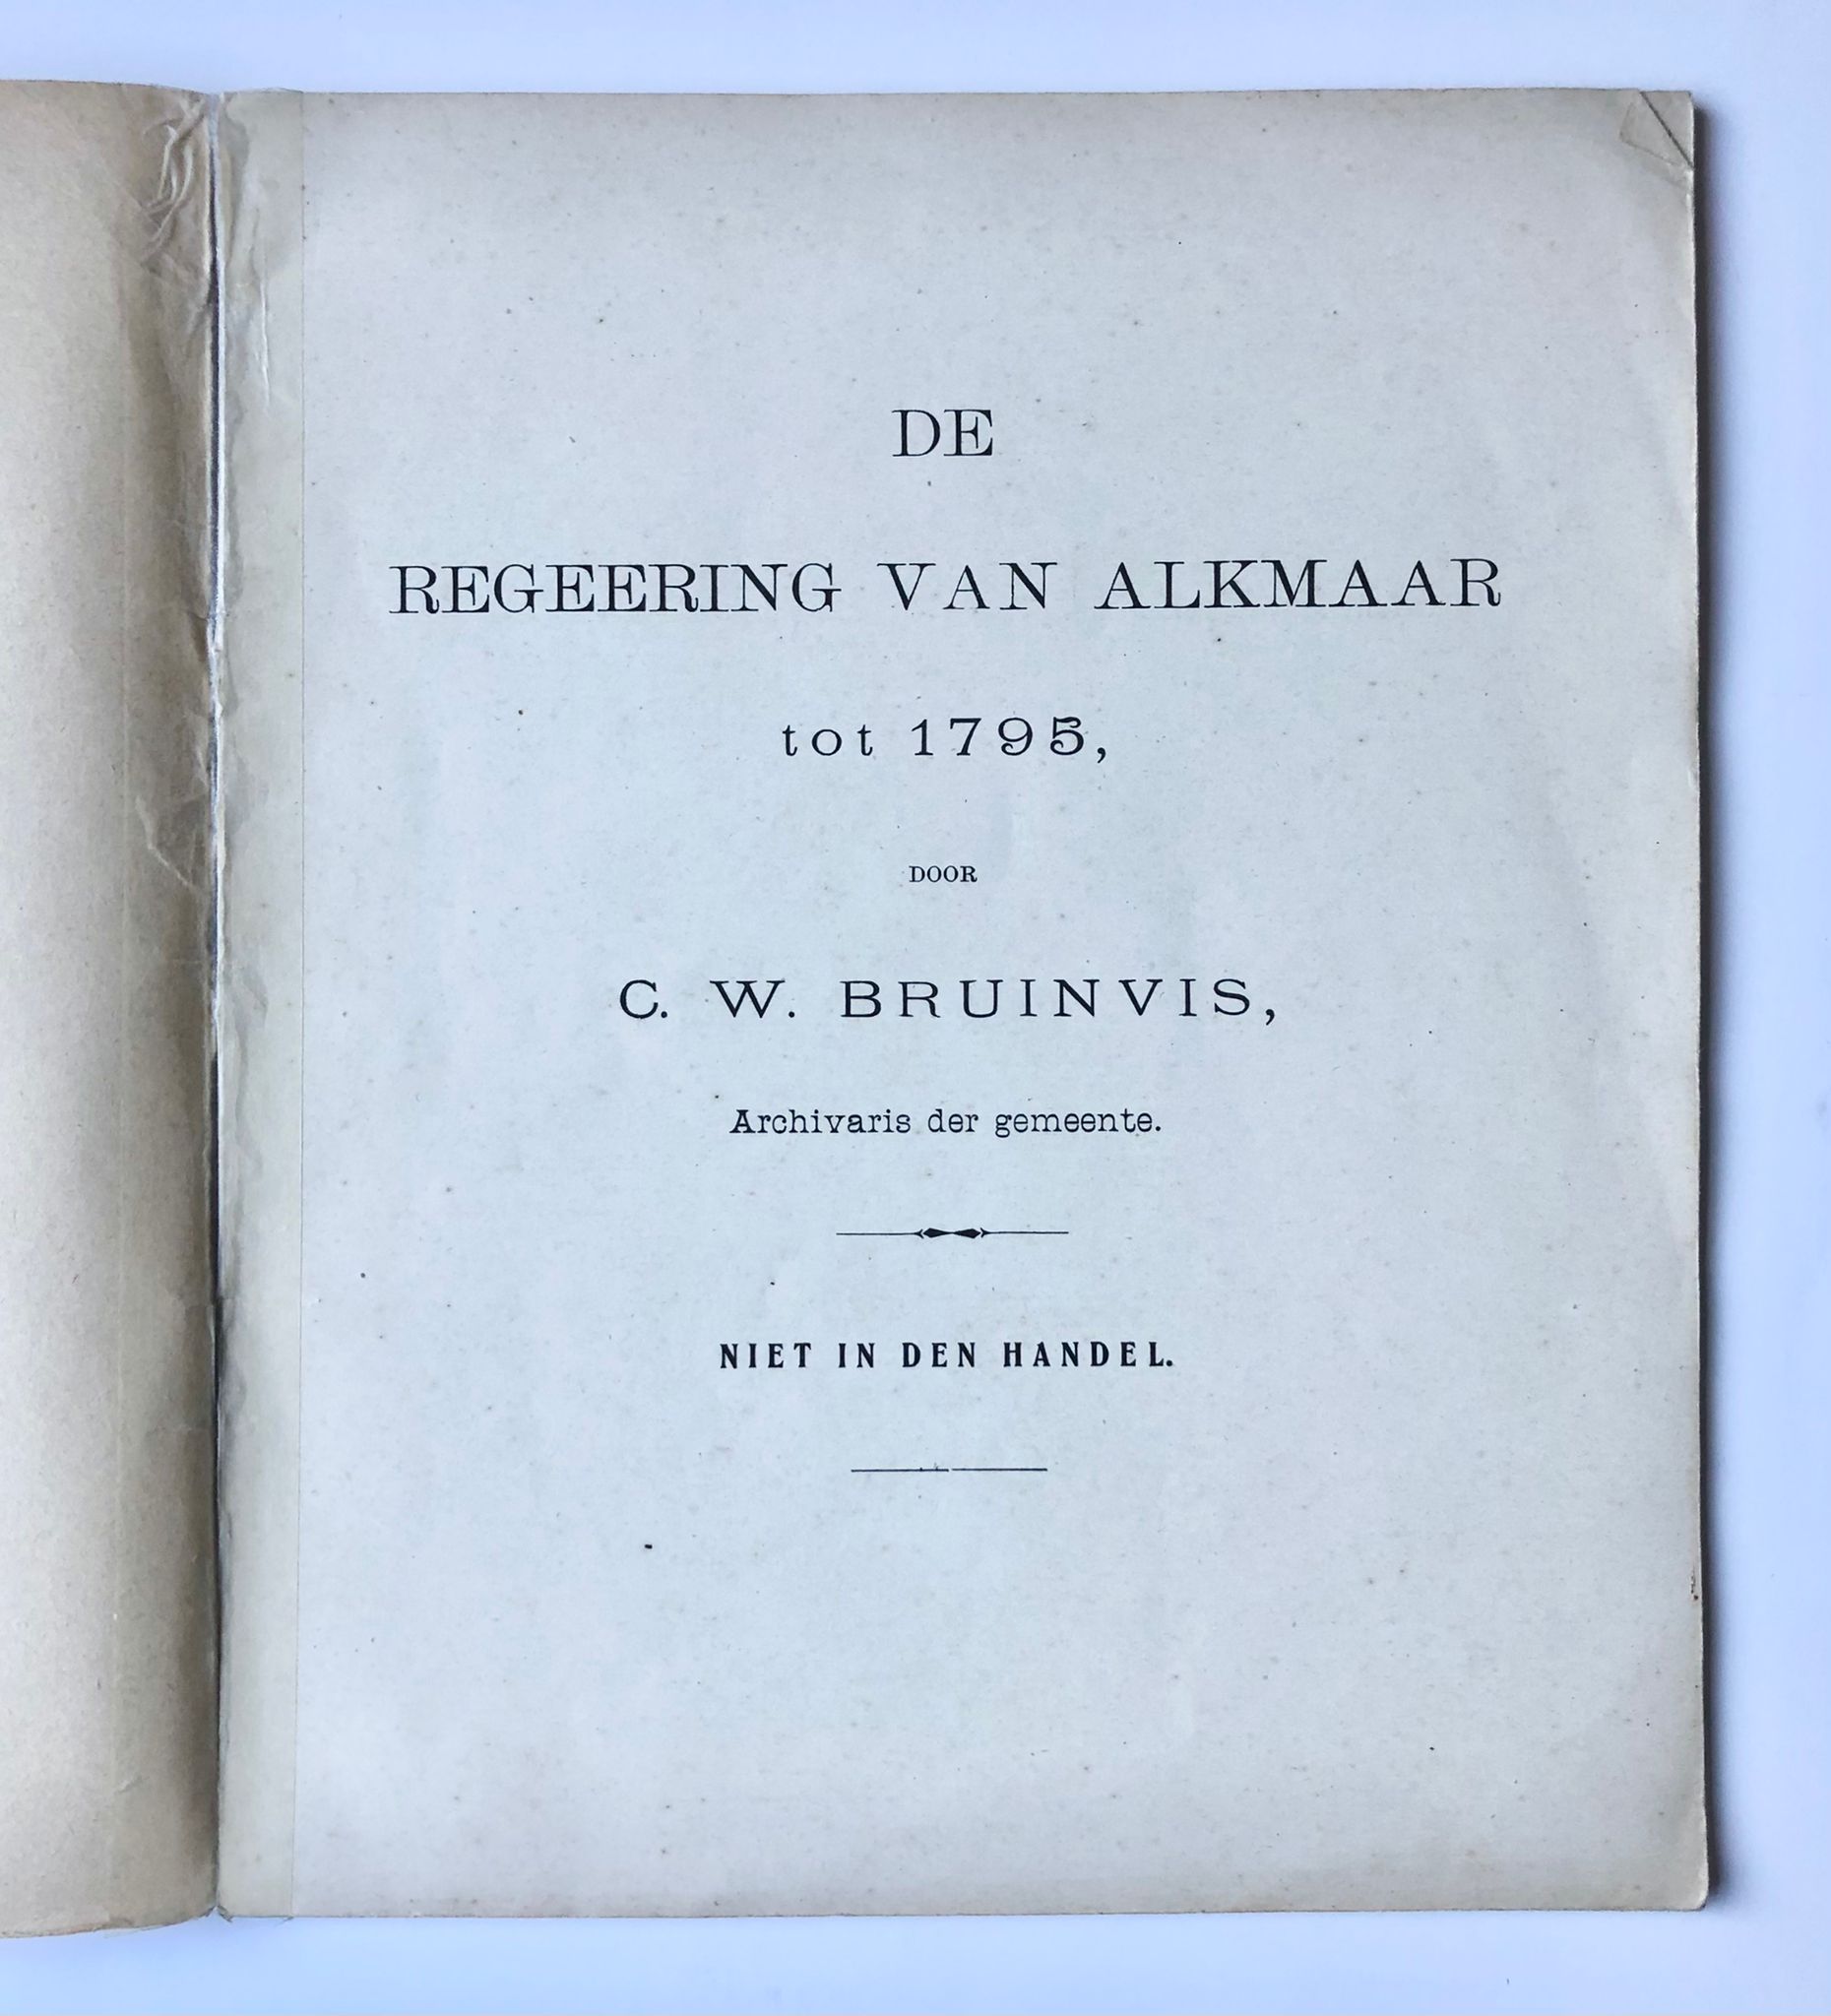 [History book Alkmaar, Noord-Holland] De regeering van Alkmaar tot 1795, Door C. W. Bruinvis, Archivaris der gemeente. Niet in den handel. 38 pp.